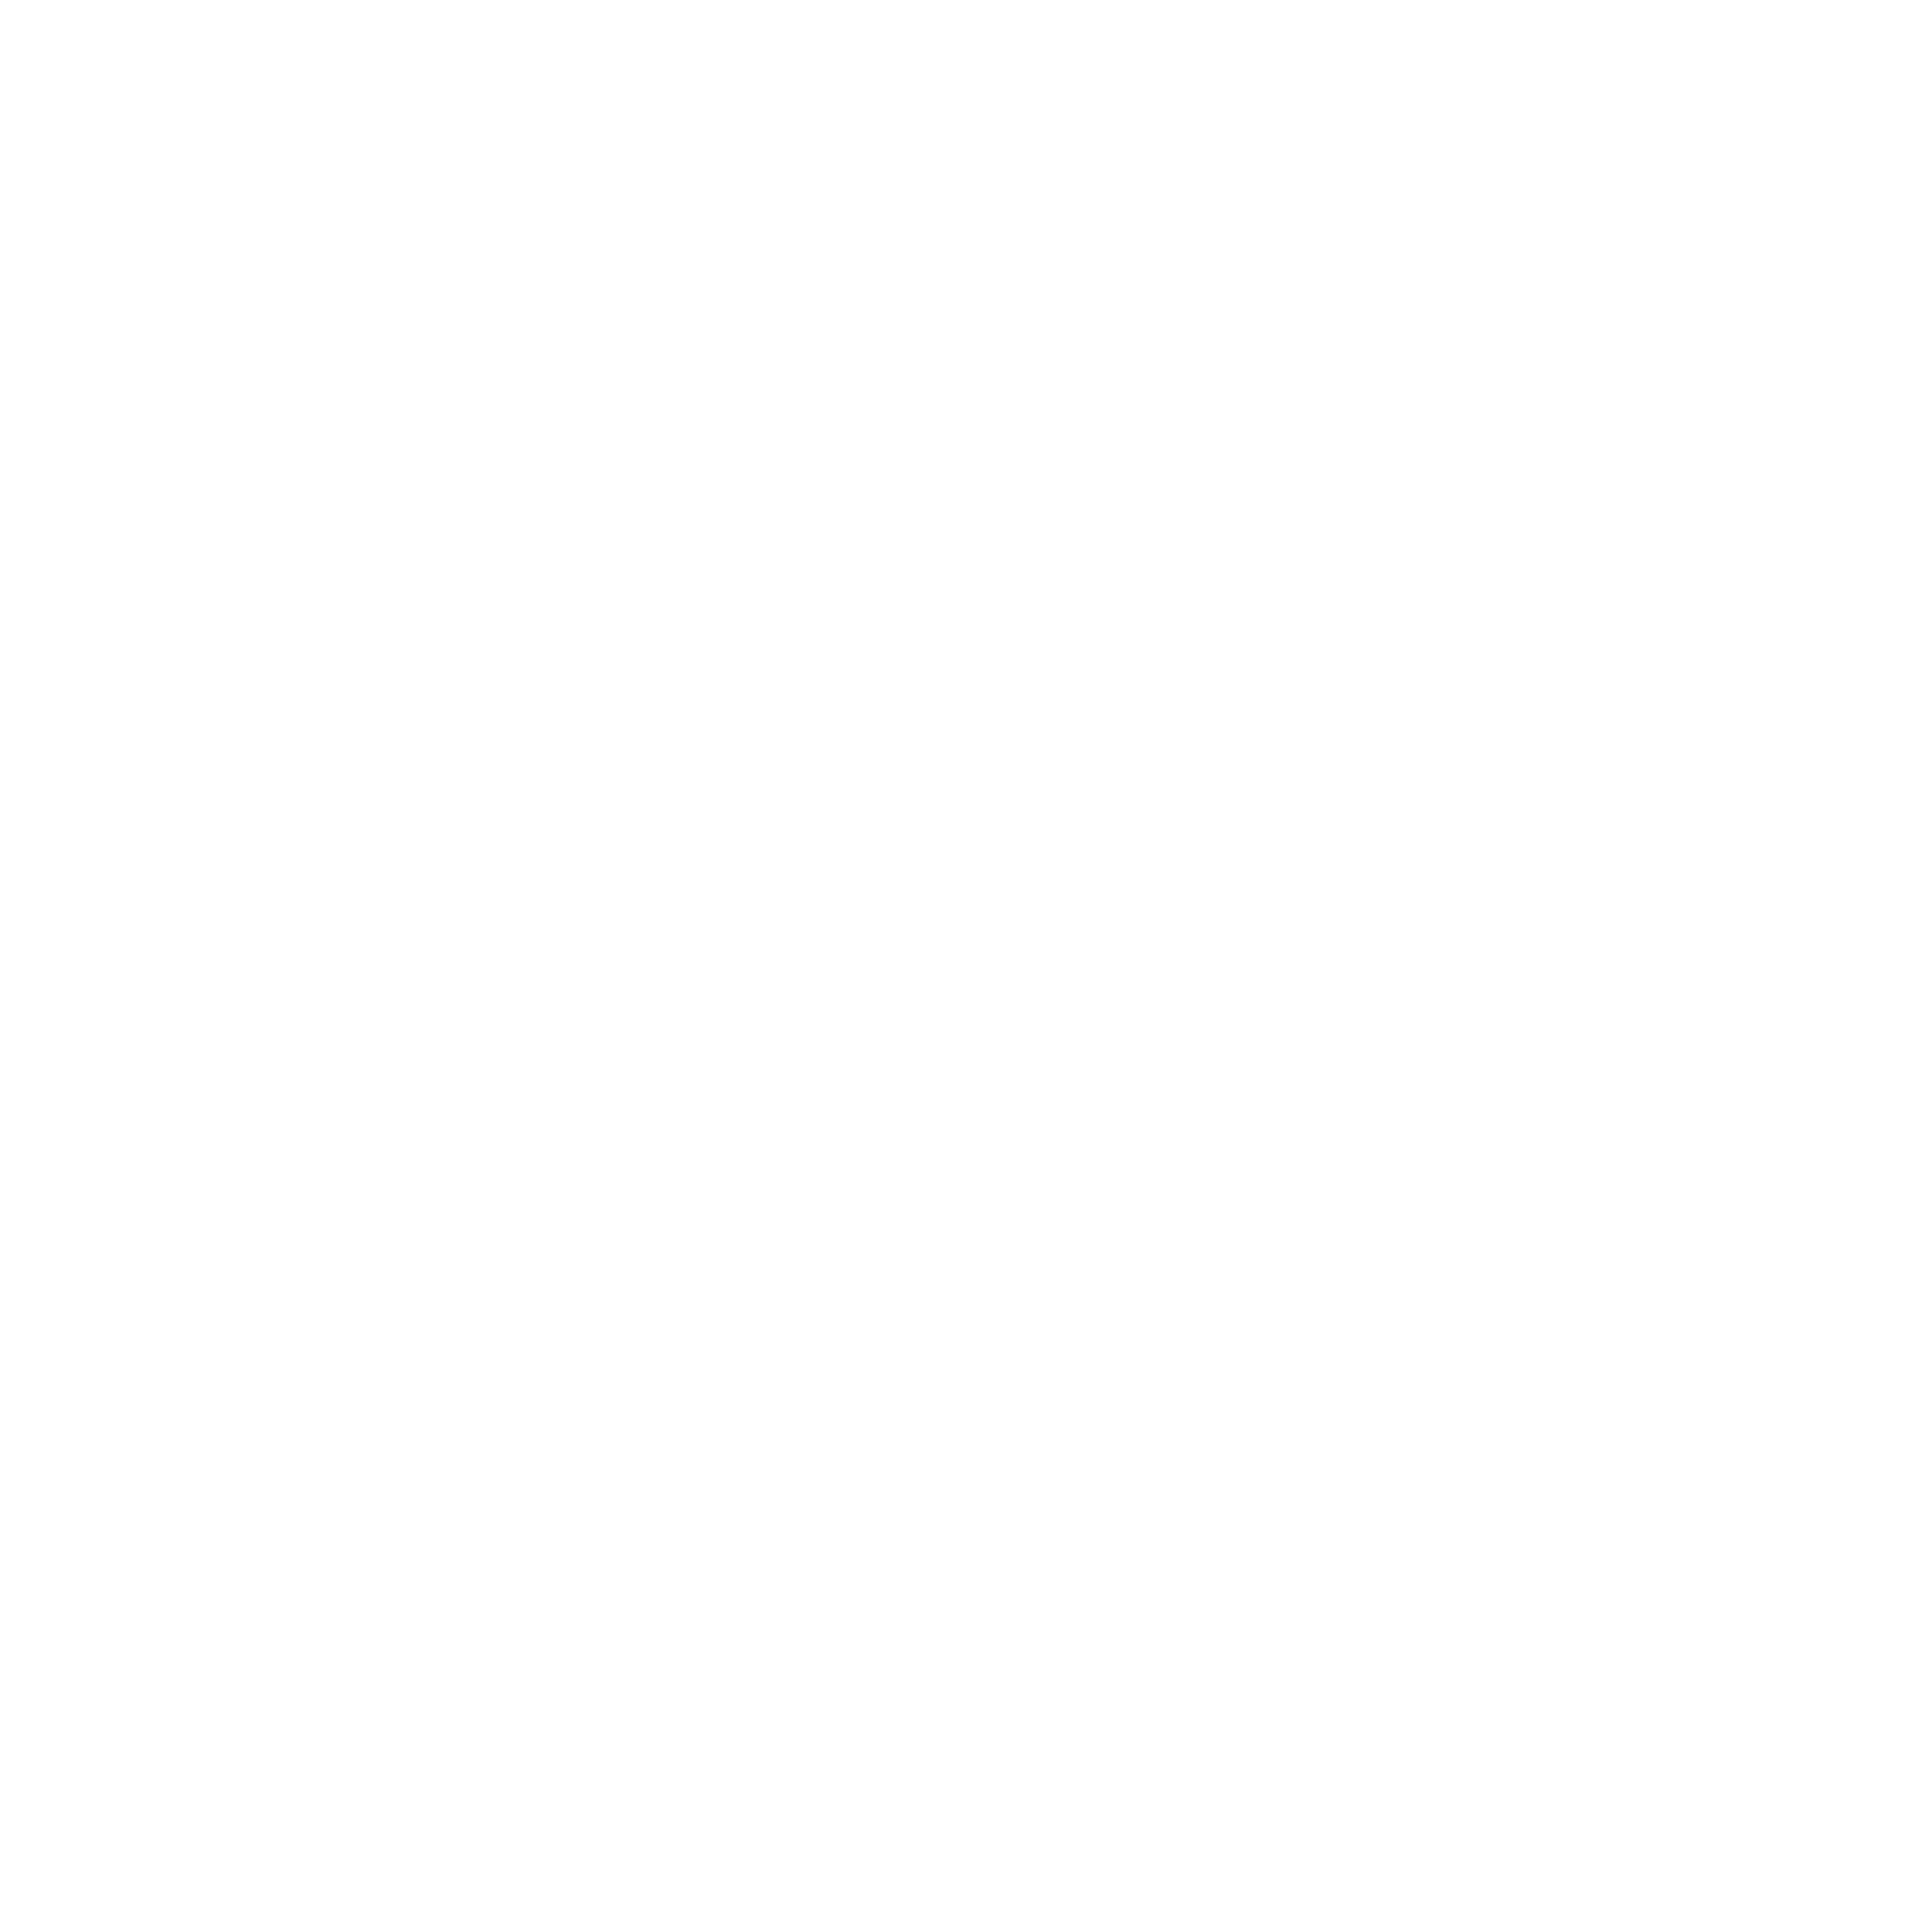 Piervittorio Pozzo Photography